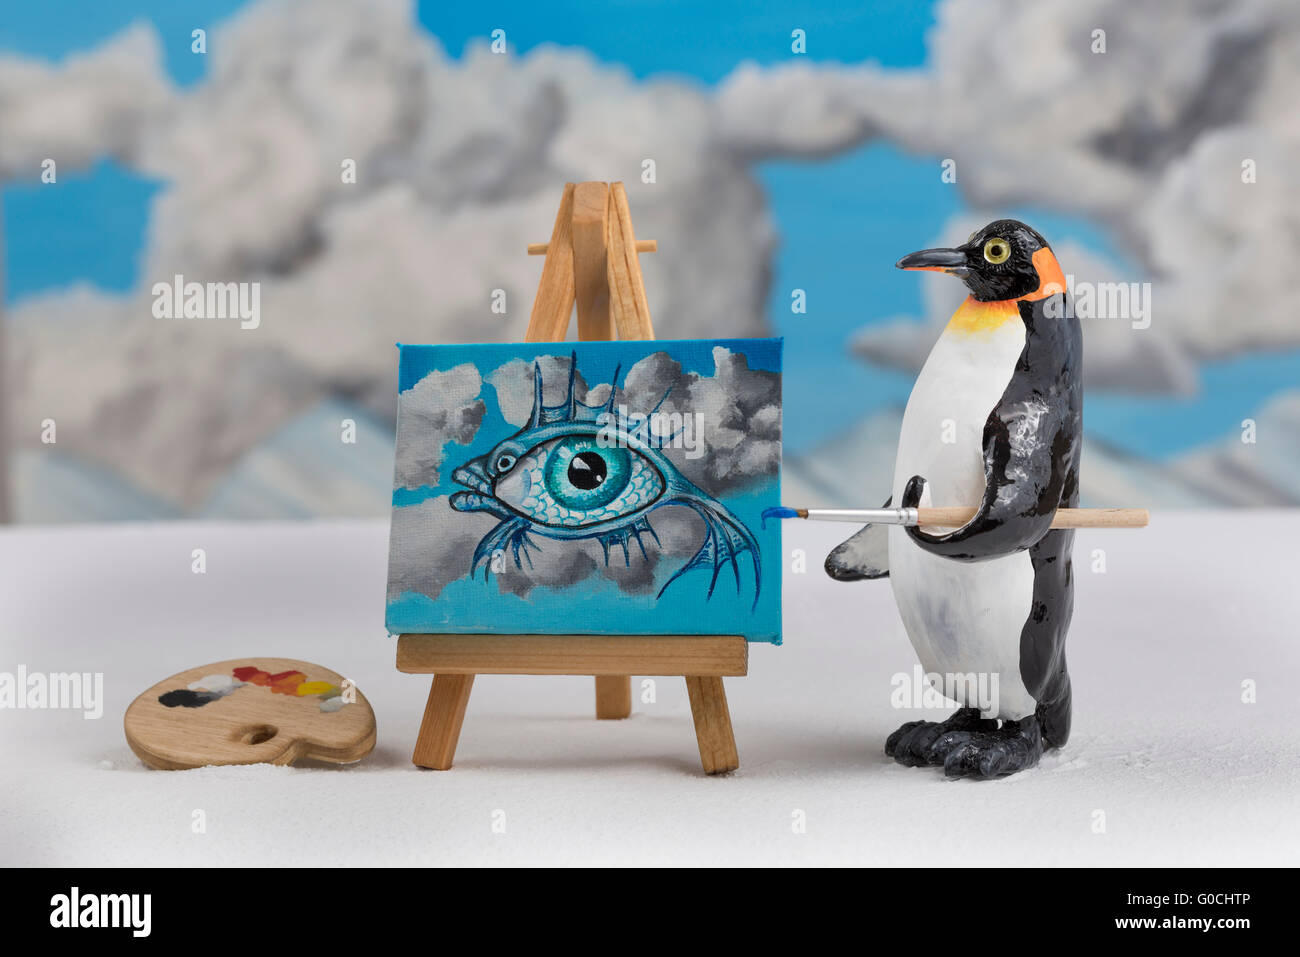 Modelo de un pingüino pintura surrealista con ojo de pescado y la escena del cielo Foto de stock